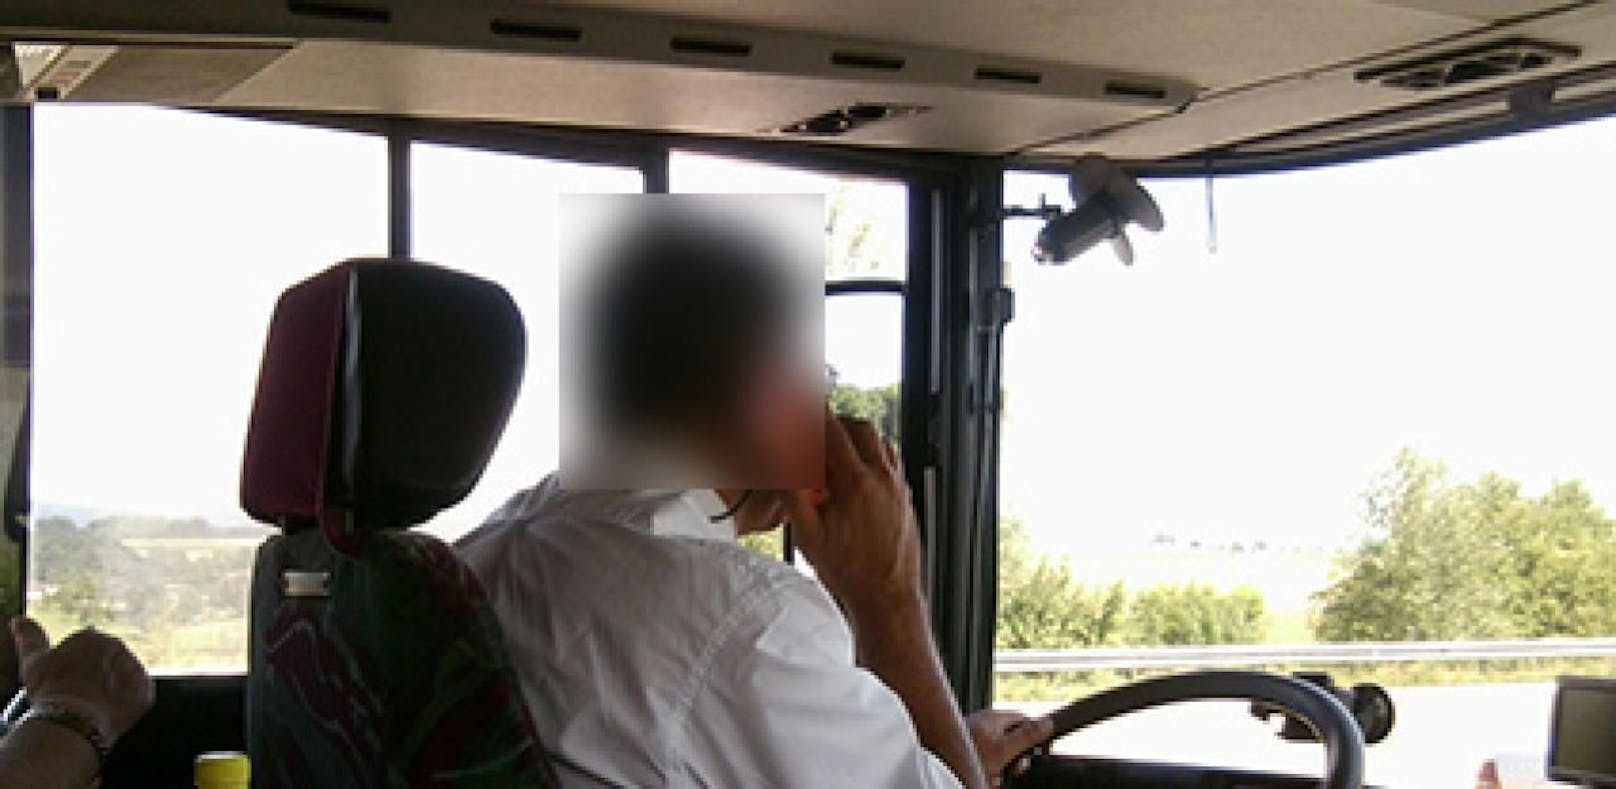 Bus-Chauffeur heuerte Jugendliche für Pornos an